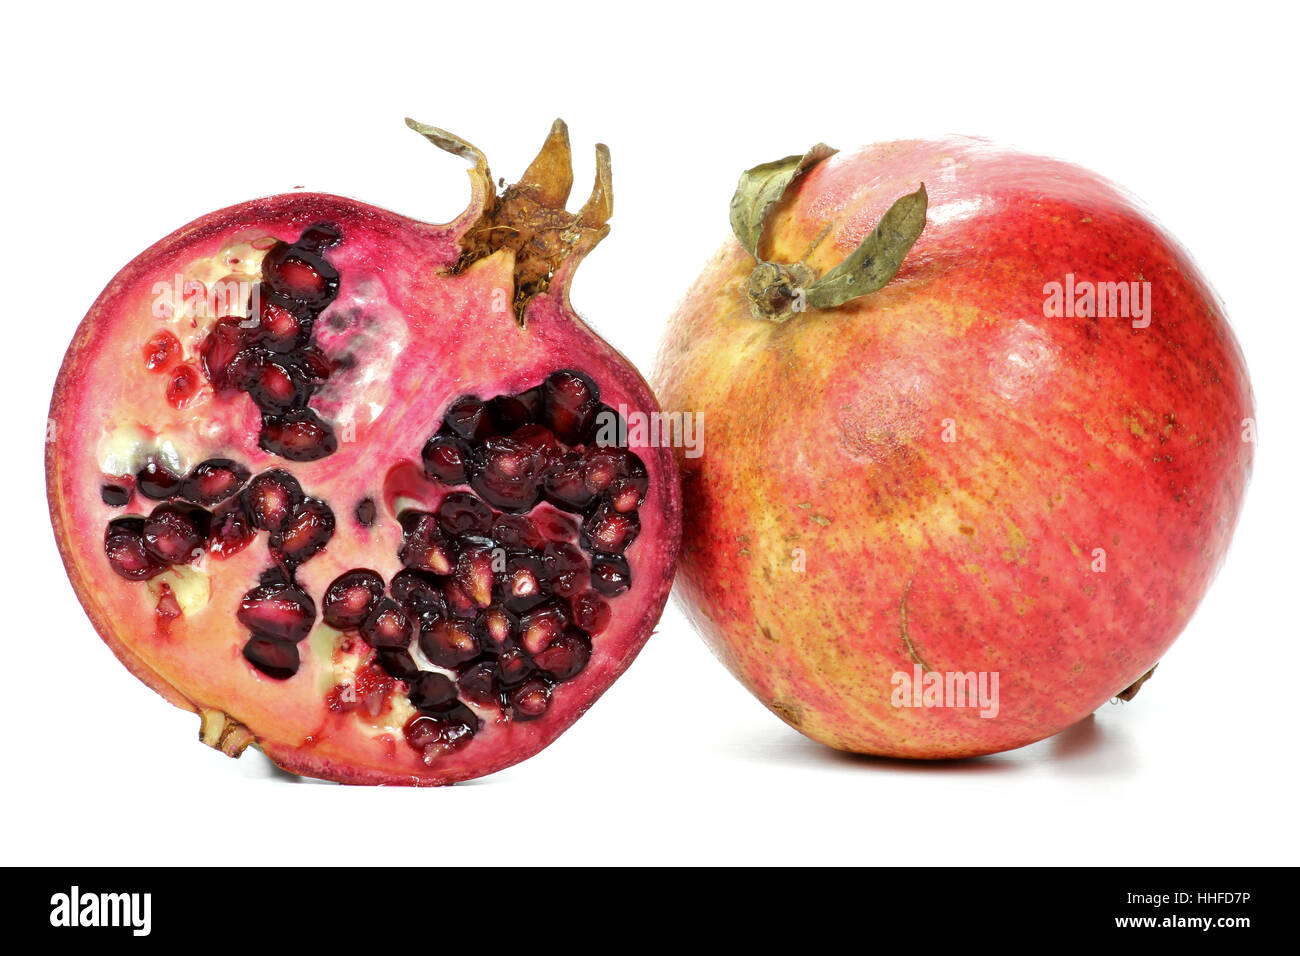 pomegranate isolated on white background Stock Photo